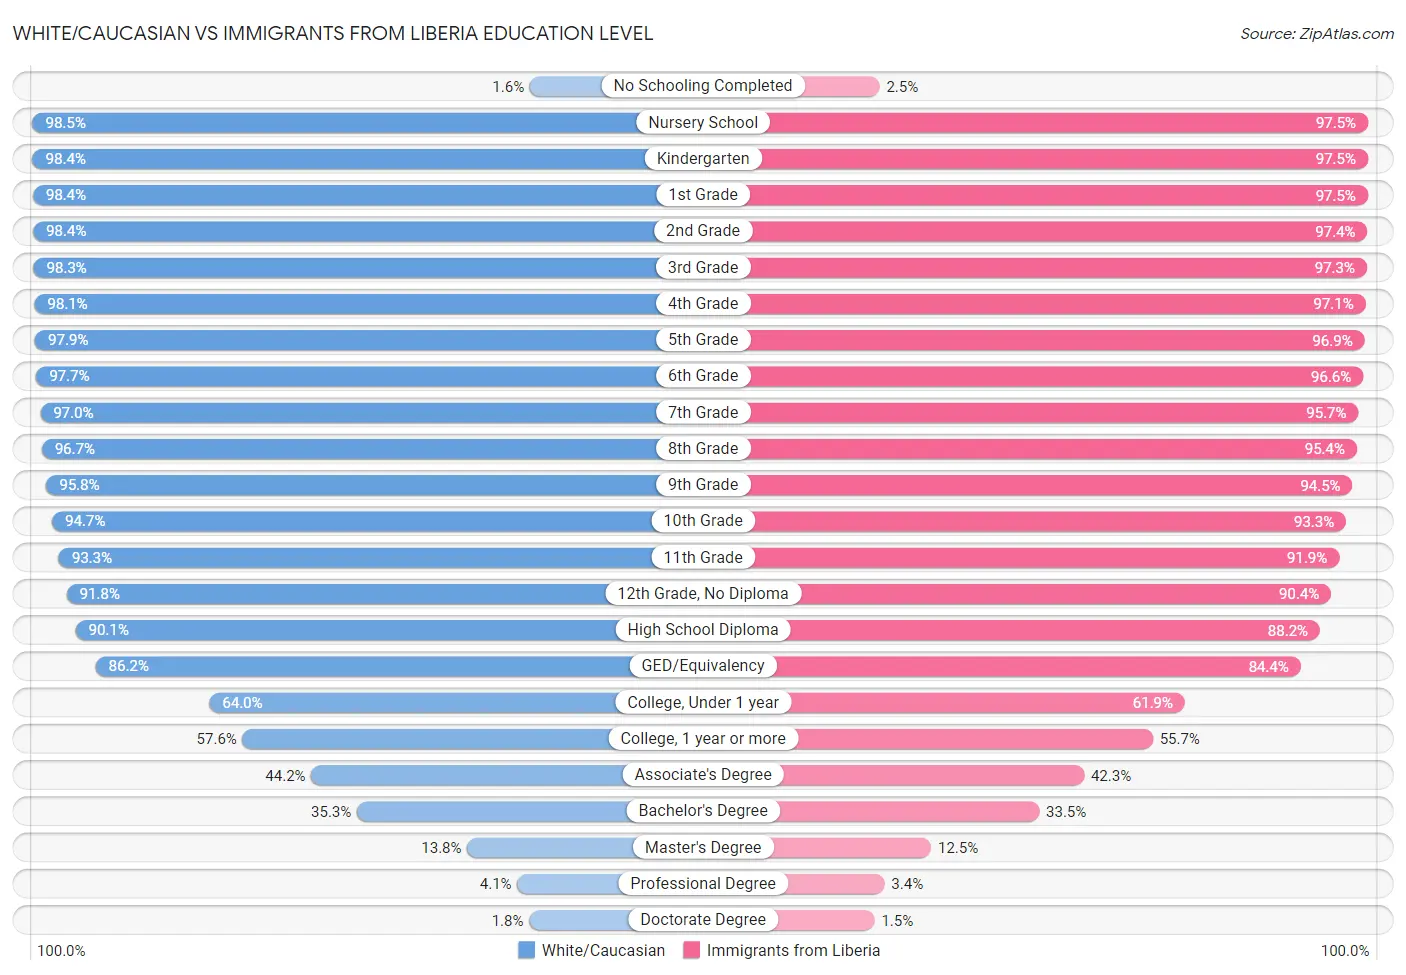 White/Caucasian vs Immigrants from Liberia Education Level